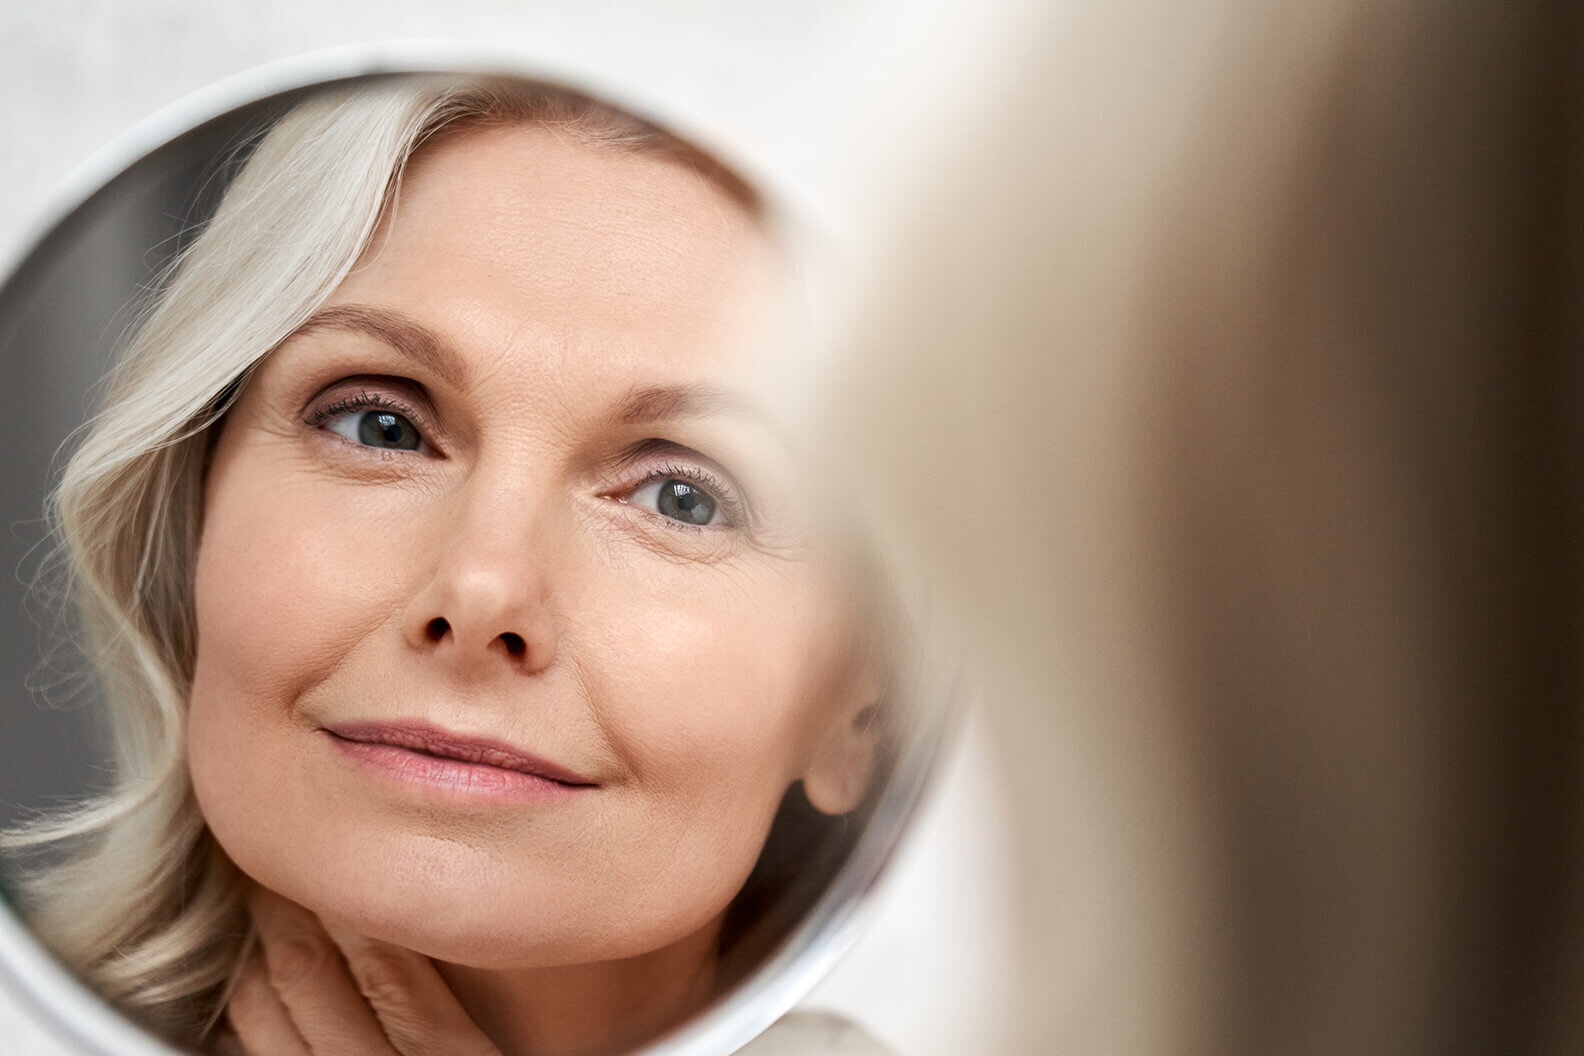 Permanent Cosmetic Procedures for Women Over 60